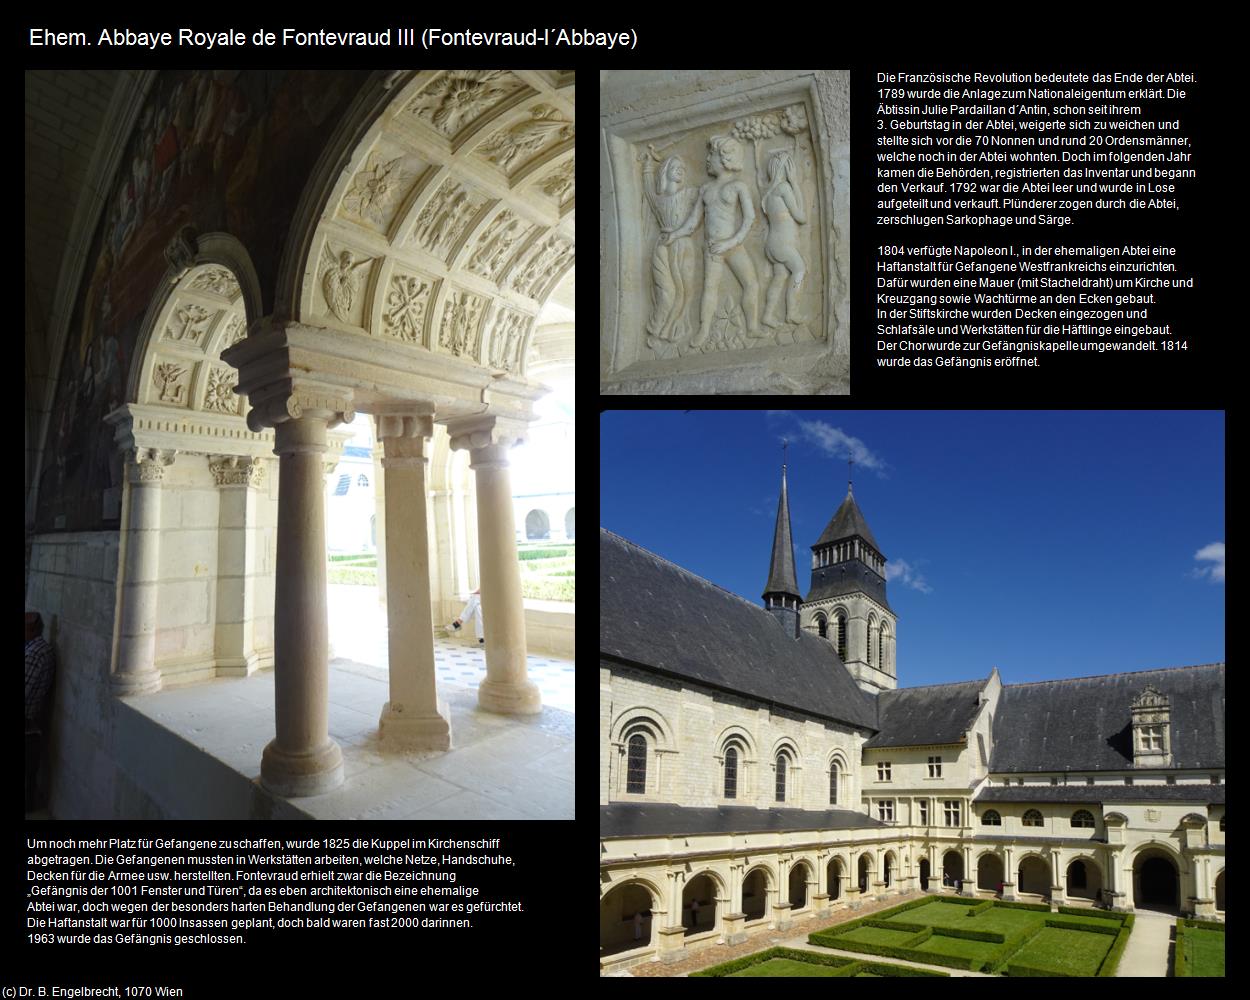 Ehem. Abbaye Royale de Fontevraud III (Fontevraud-l‘Abbaye (FR-PDL)) in Kulturatlas-FRANKREICH